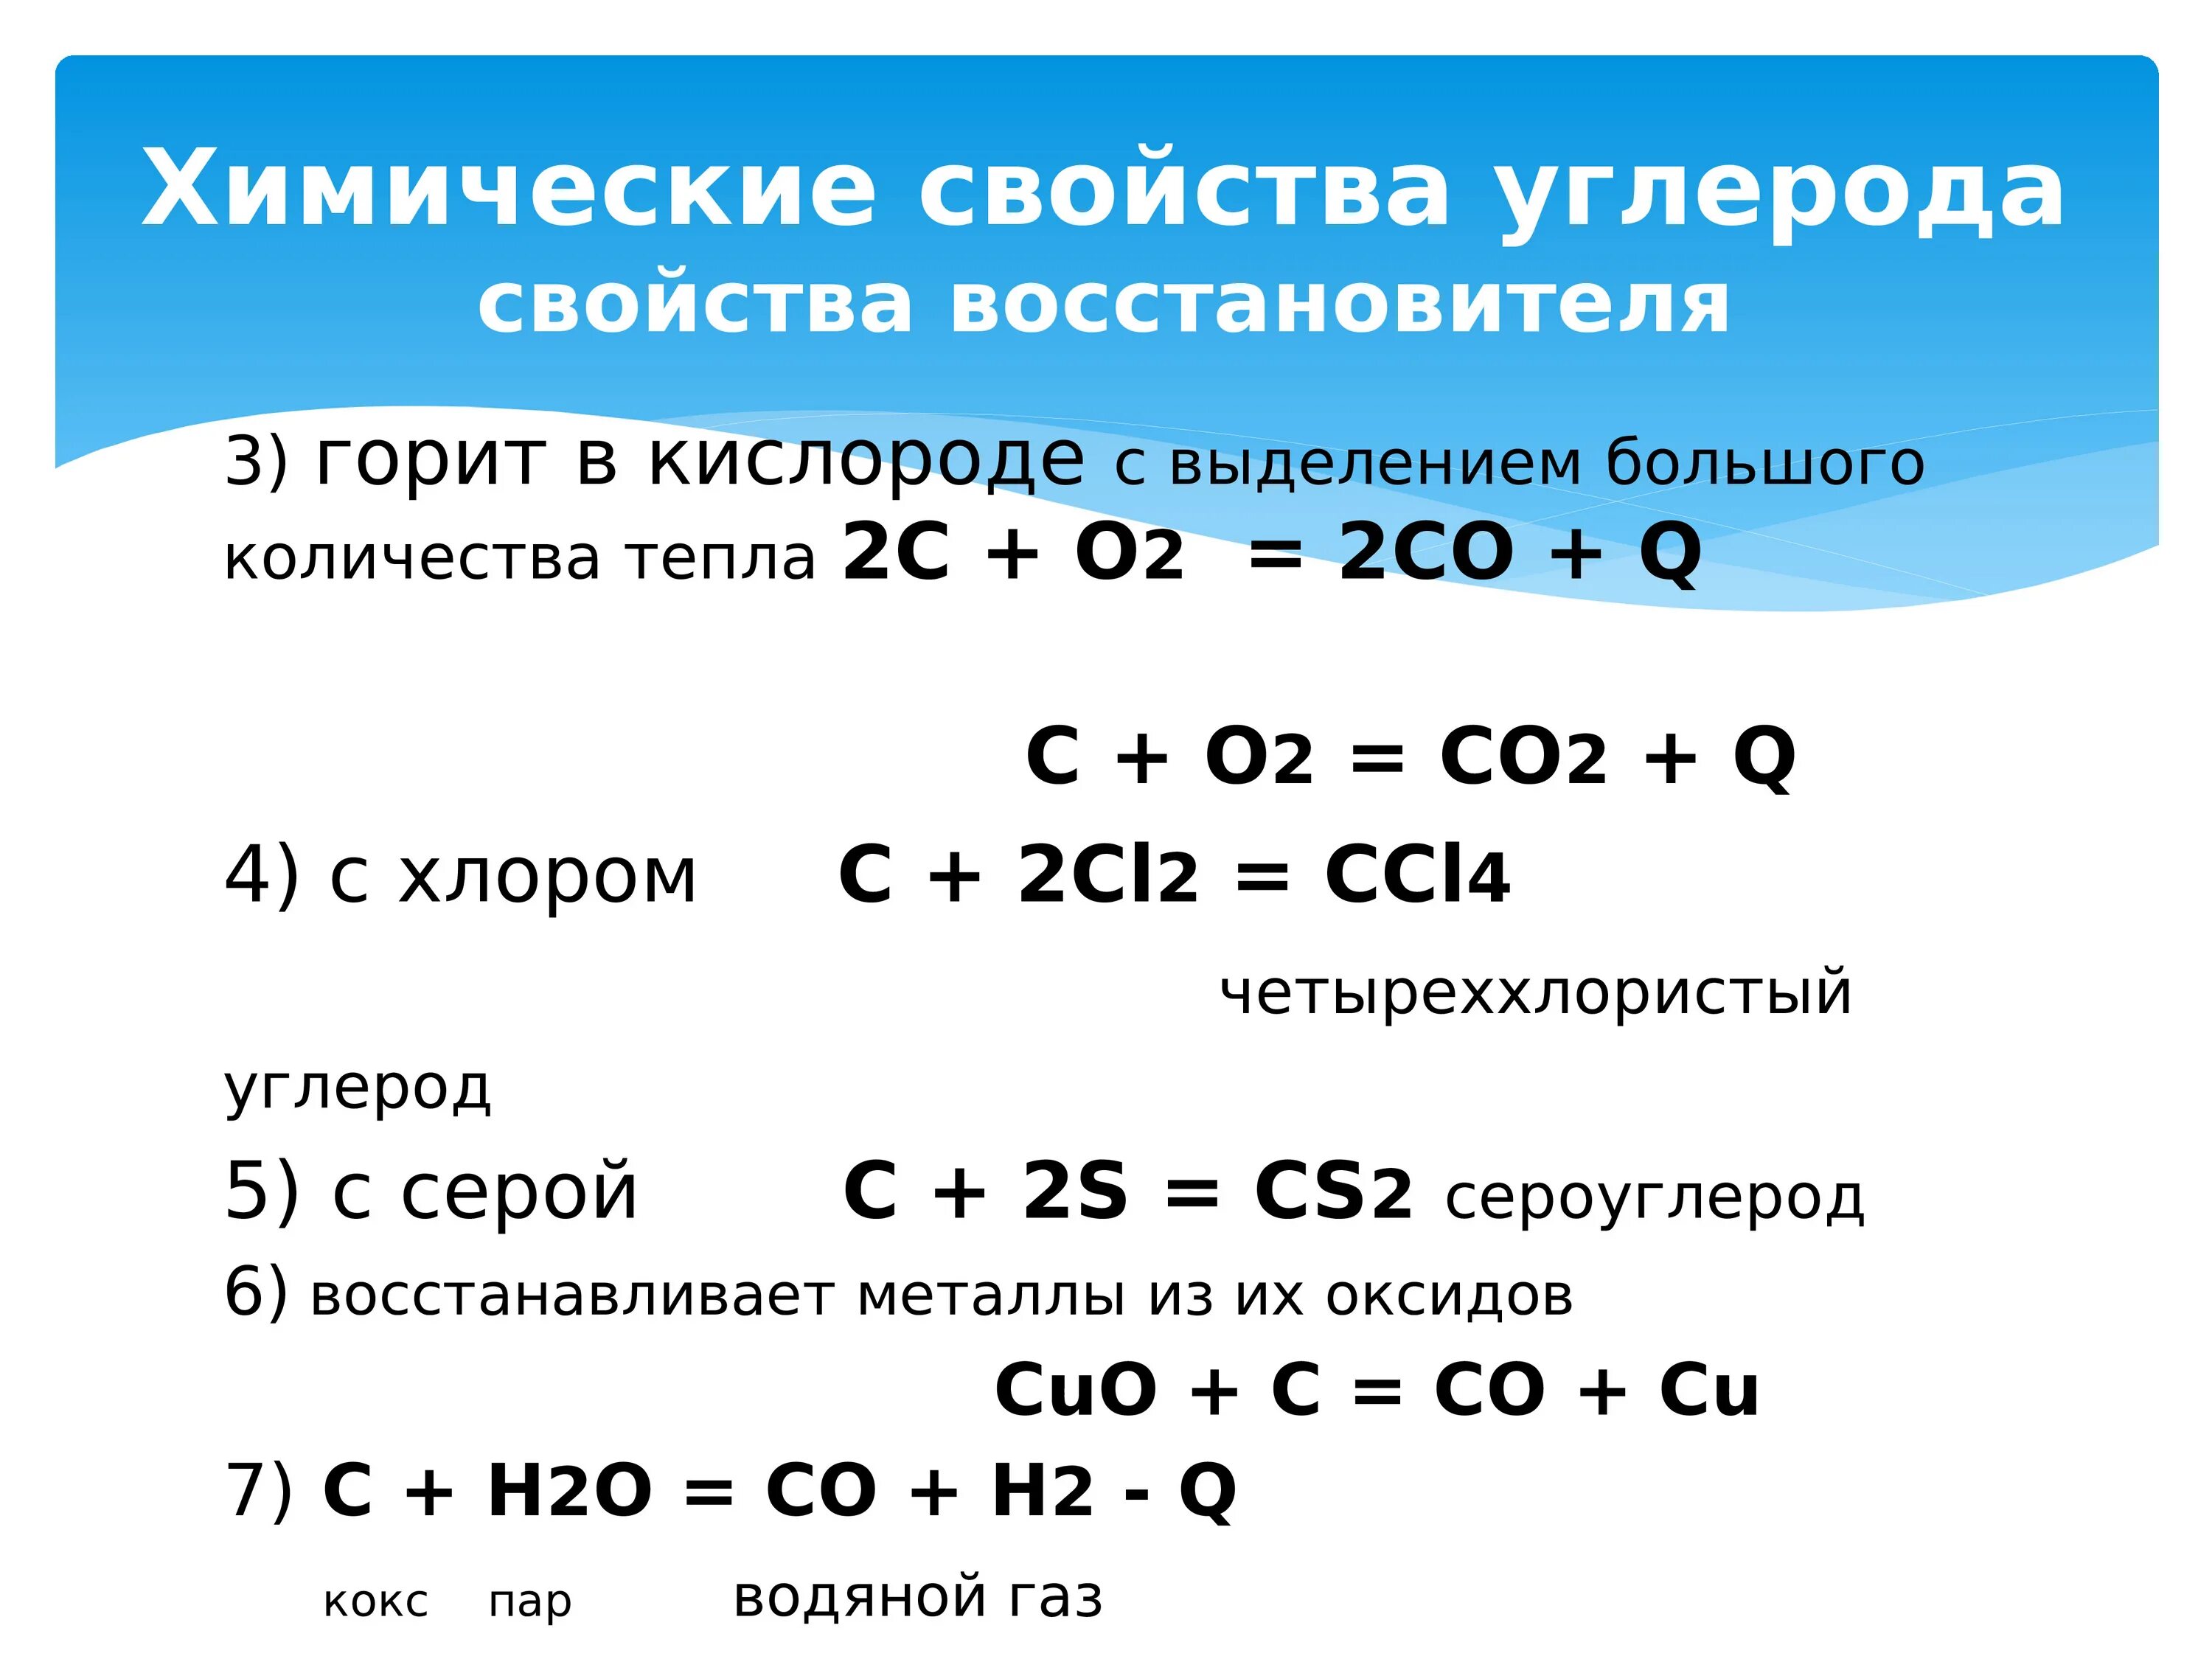 Реакции с кислородом примеры. Химические свойства углерода реакции. Химические свойства углерода таблица. Химические свойства углерода уравнения. Углерод соединения углерода.